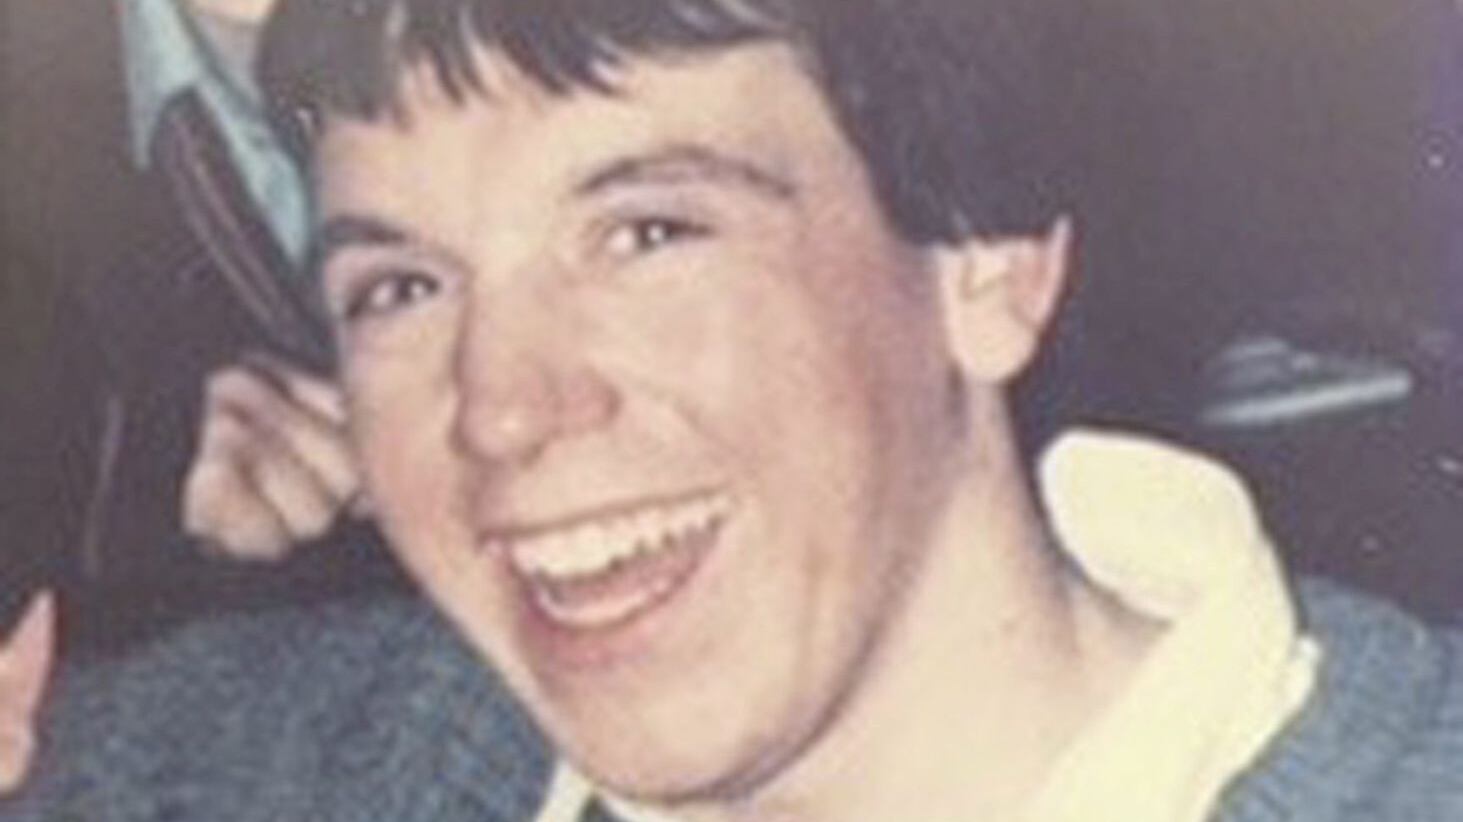 Francis Bradley was shot dead in 1986